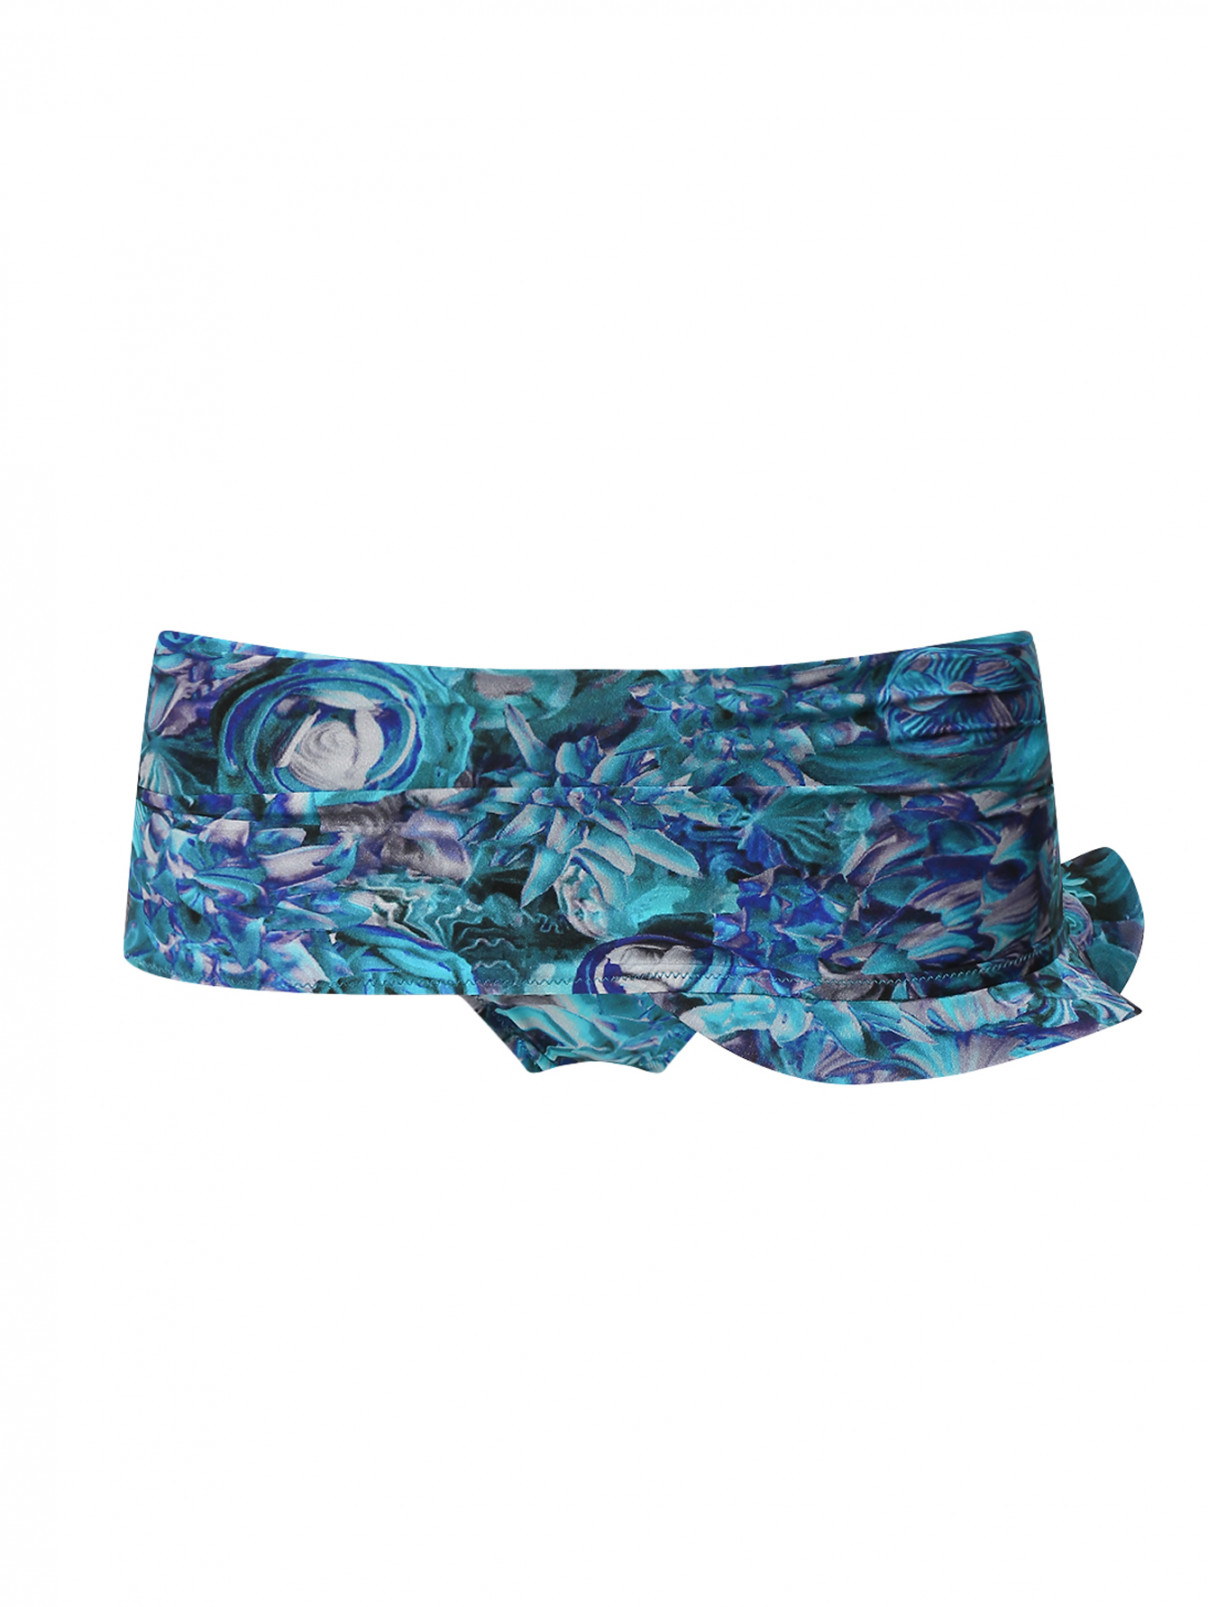 Купальник низ с узором и декоративной юбкой La Perla  –  Общий вид  – Цвет:  Синий